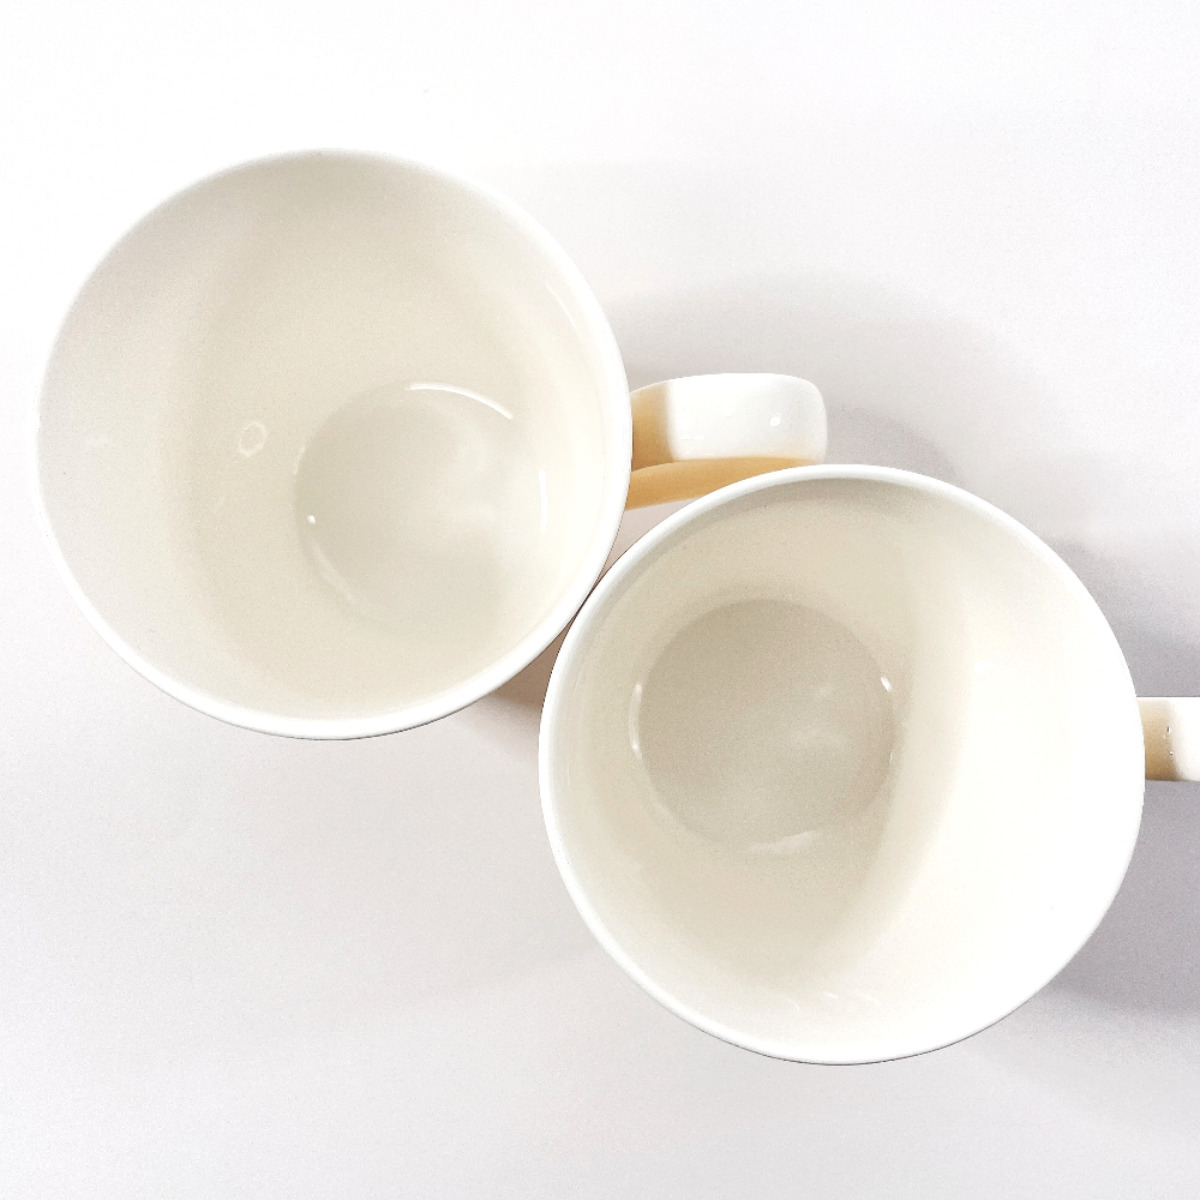 ティファニー TIFFANY&Co. マグカップ ピンクチューリップ フラワー ペア 2個セット 陶器 イエロー 日本製_画像3